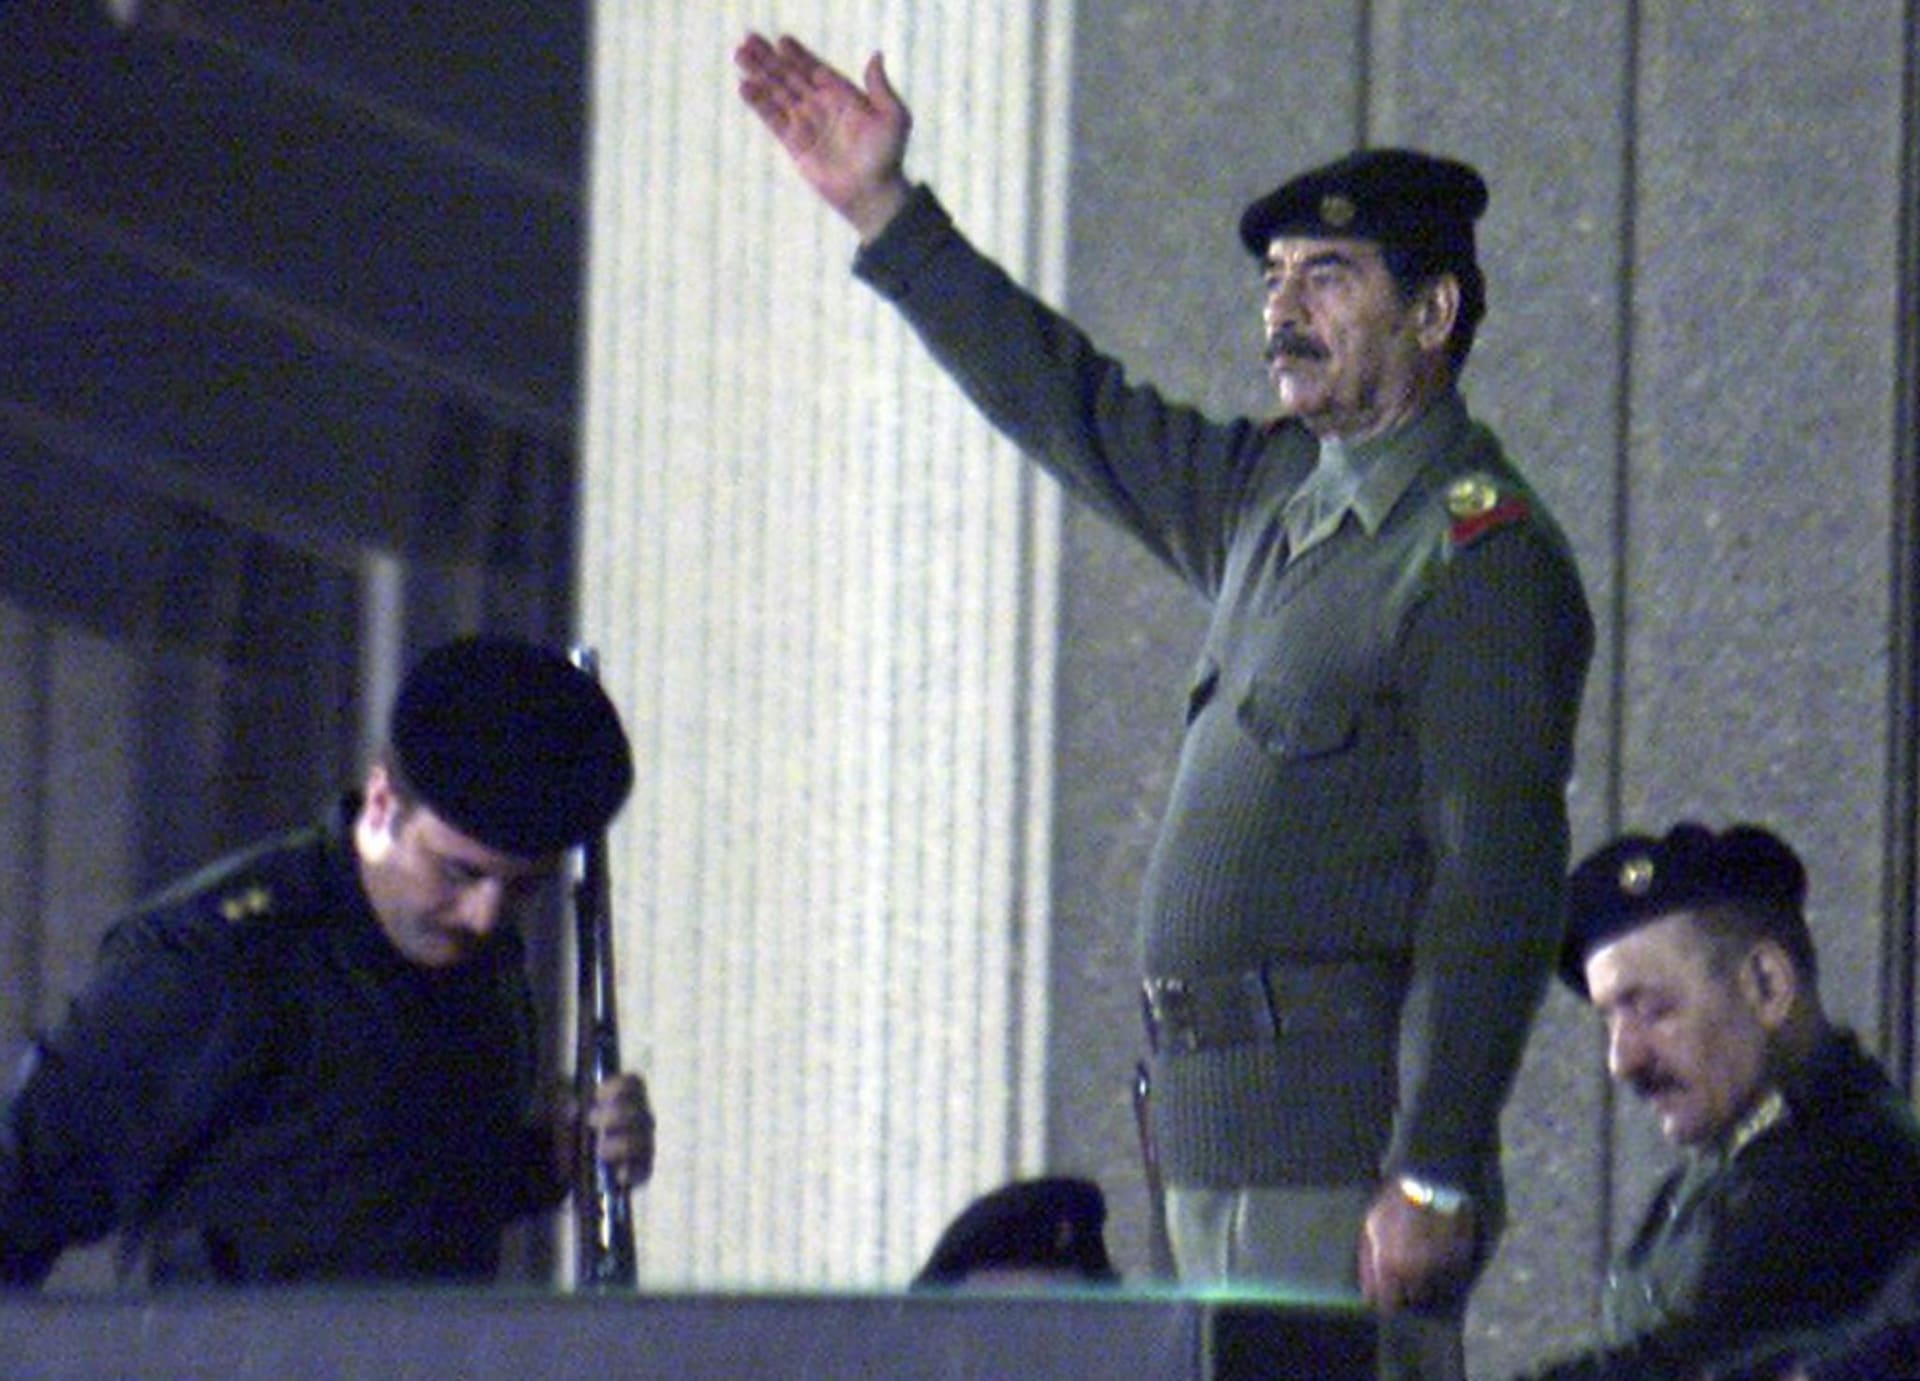 صورة أرشيفية لصدام حسين خلال عرض عسكري العام 2000